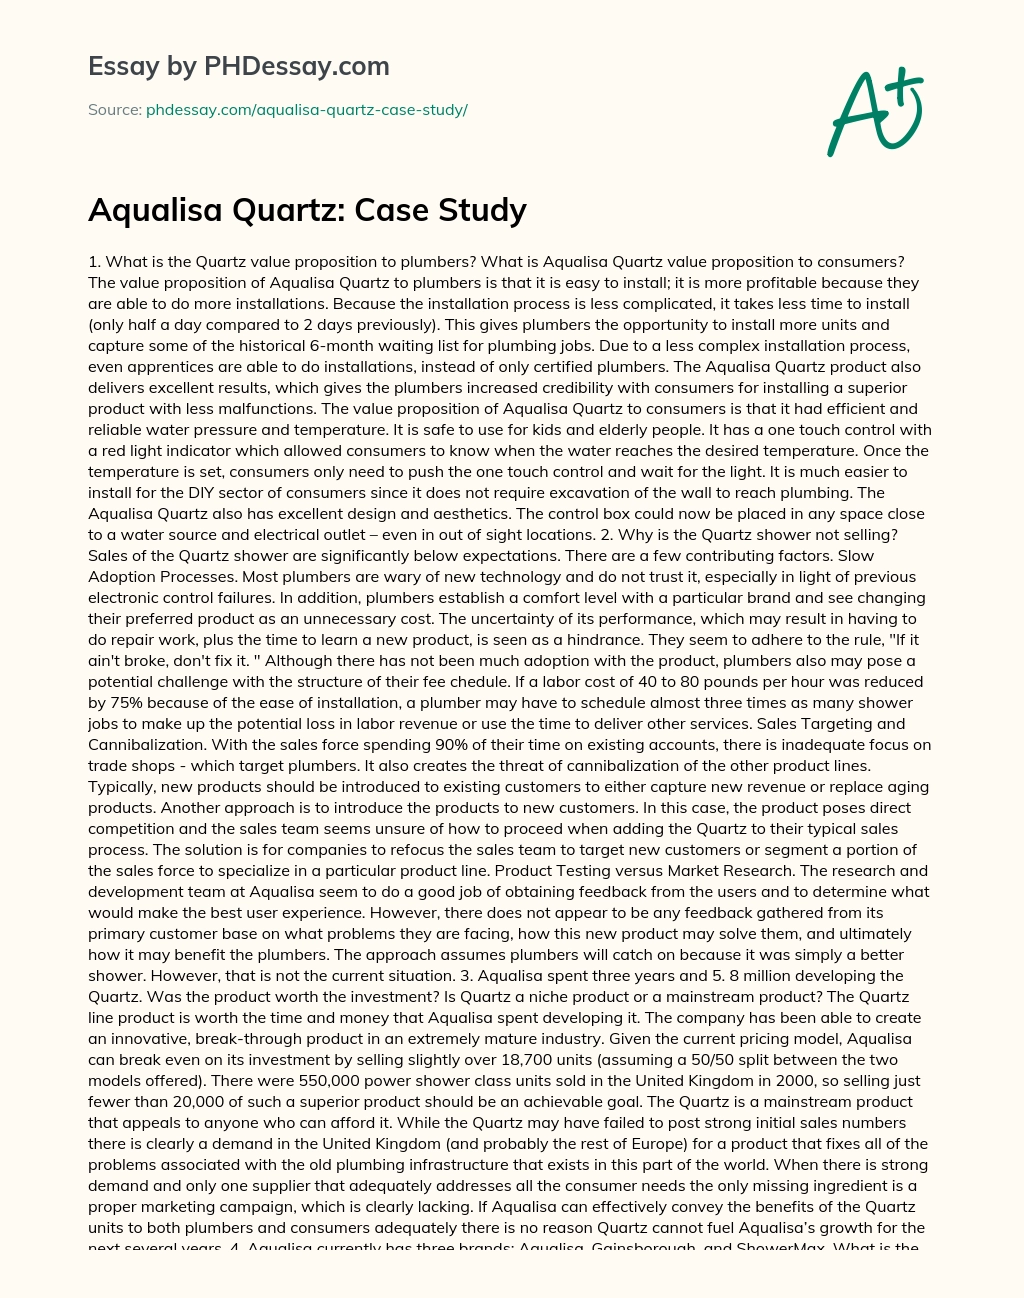 Aqualisa Quartz: Case Study essay